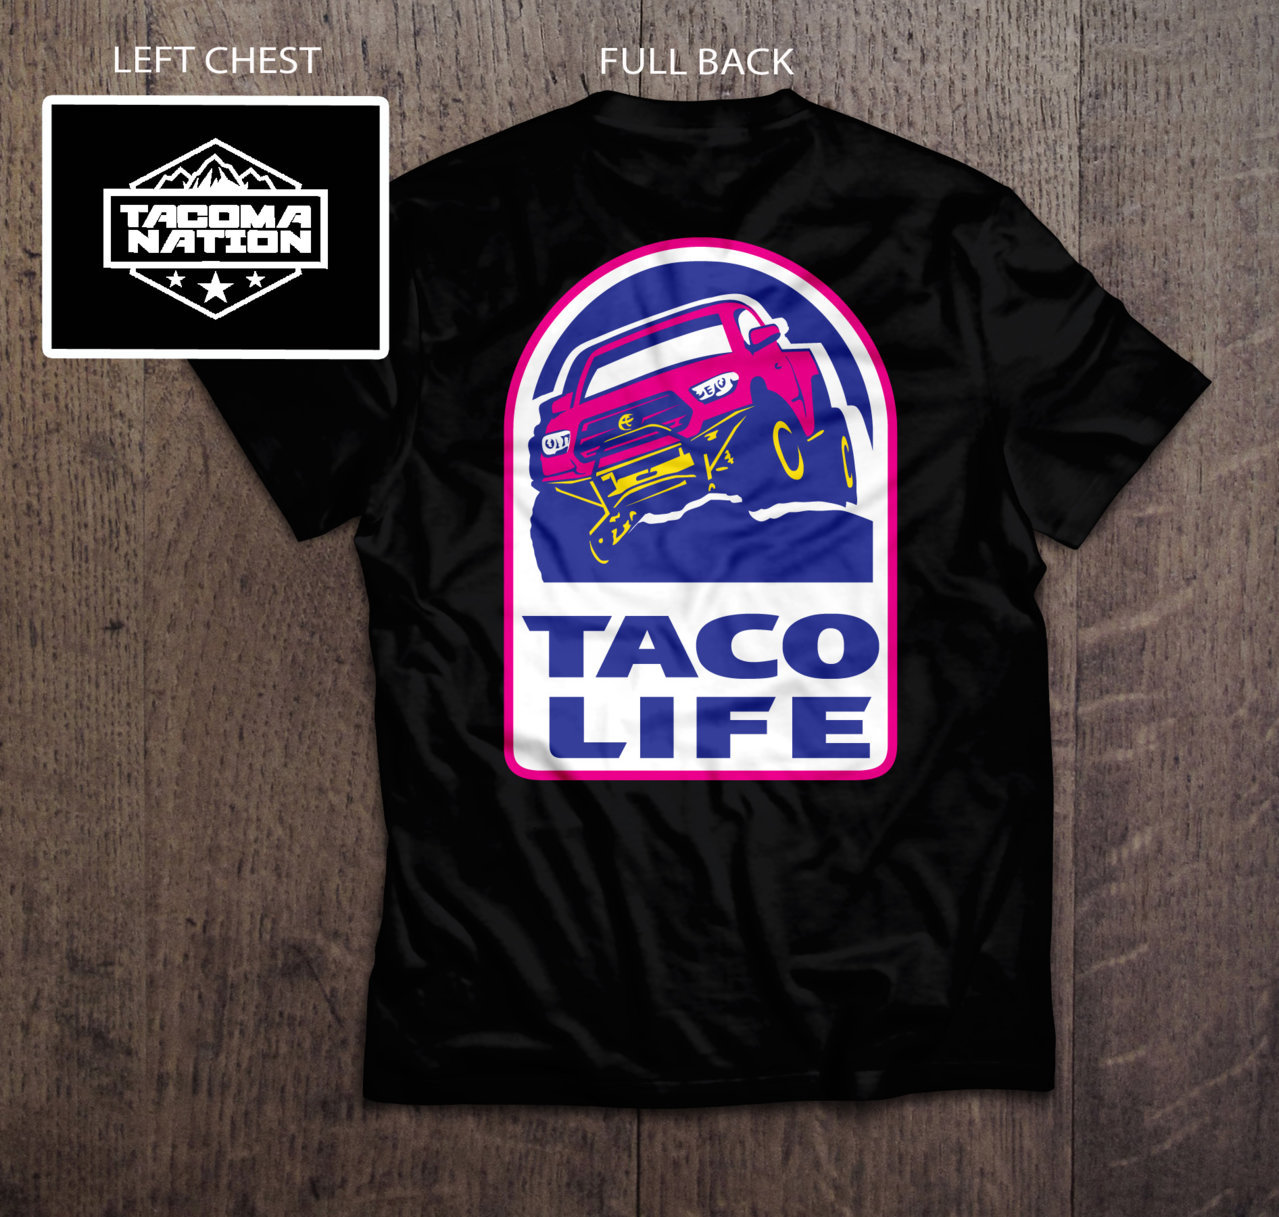 Taco Life 1990s logo mock-up.jpg